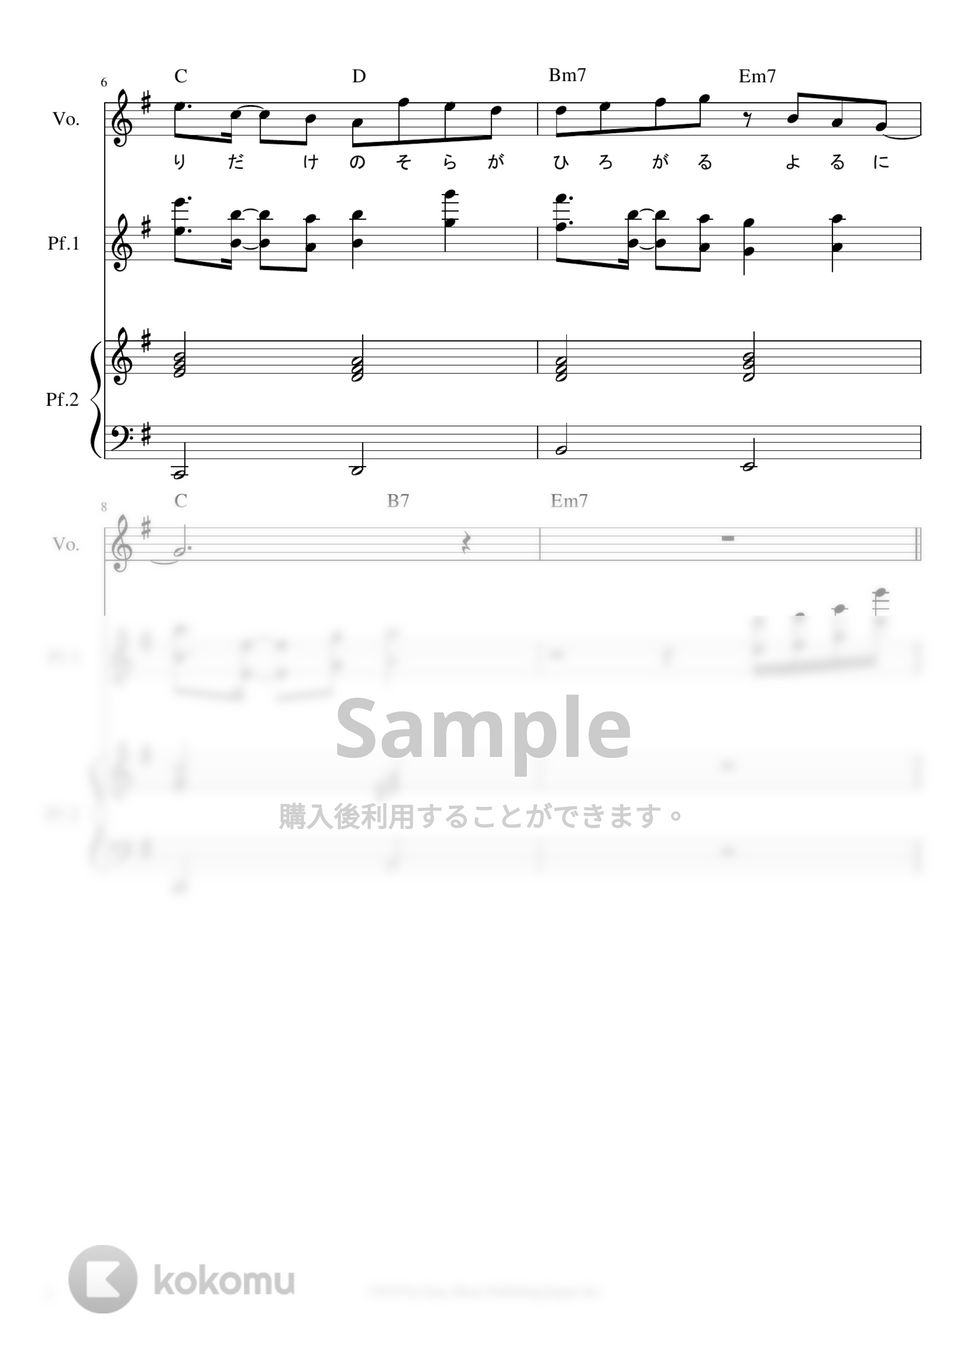 YOASOBI - ※Sample 夜に駆ける ピアノパート譜※男声アレンジ (曲した男声キーに編ピアノパート譜です。) by ましまし